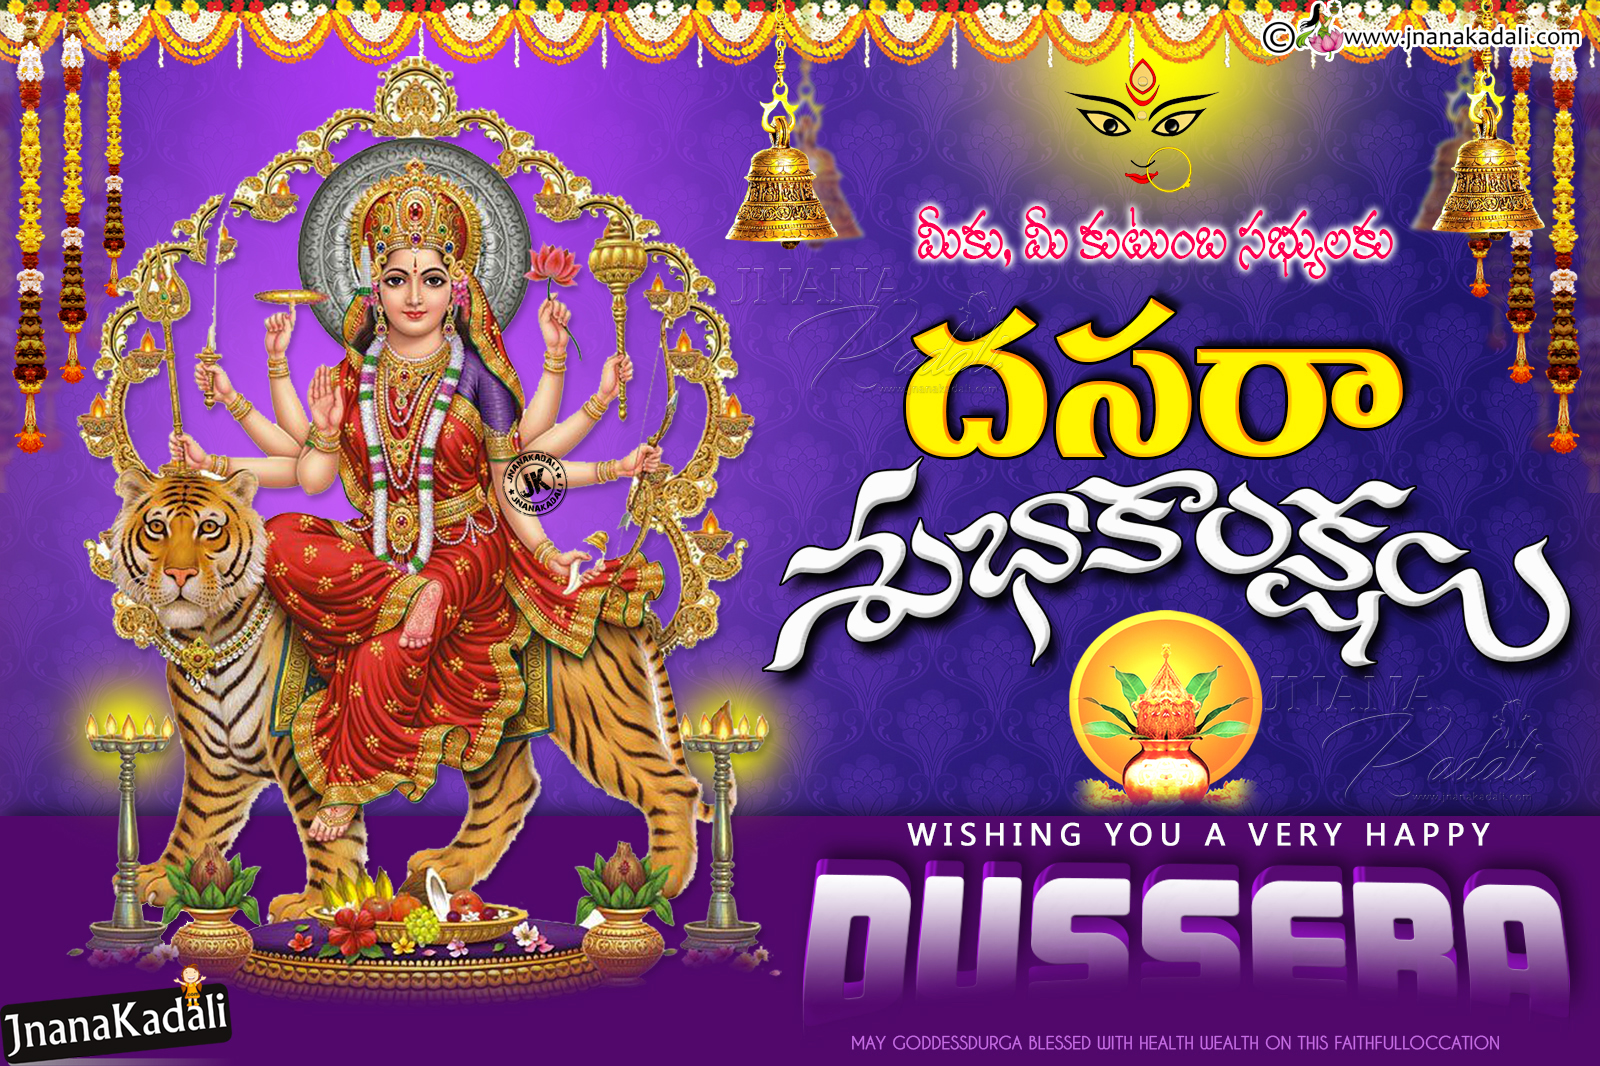 Happy Dussehra 2017 Greetings wallpapers in Telugu-Telugu ...